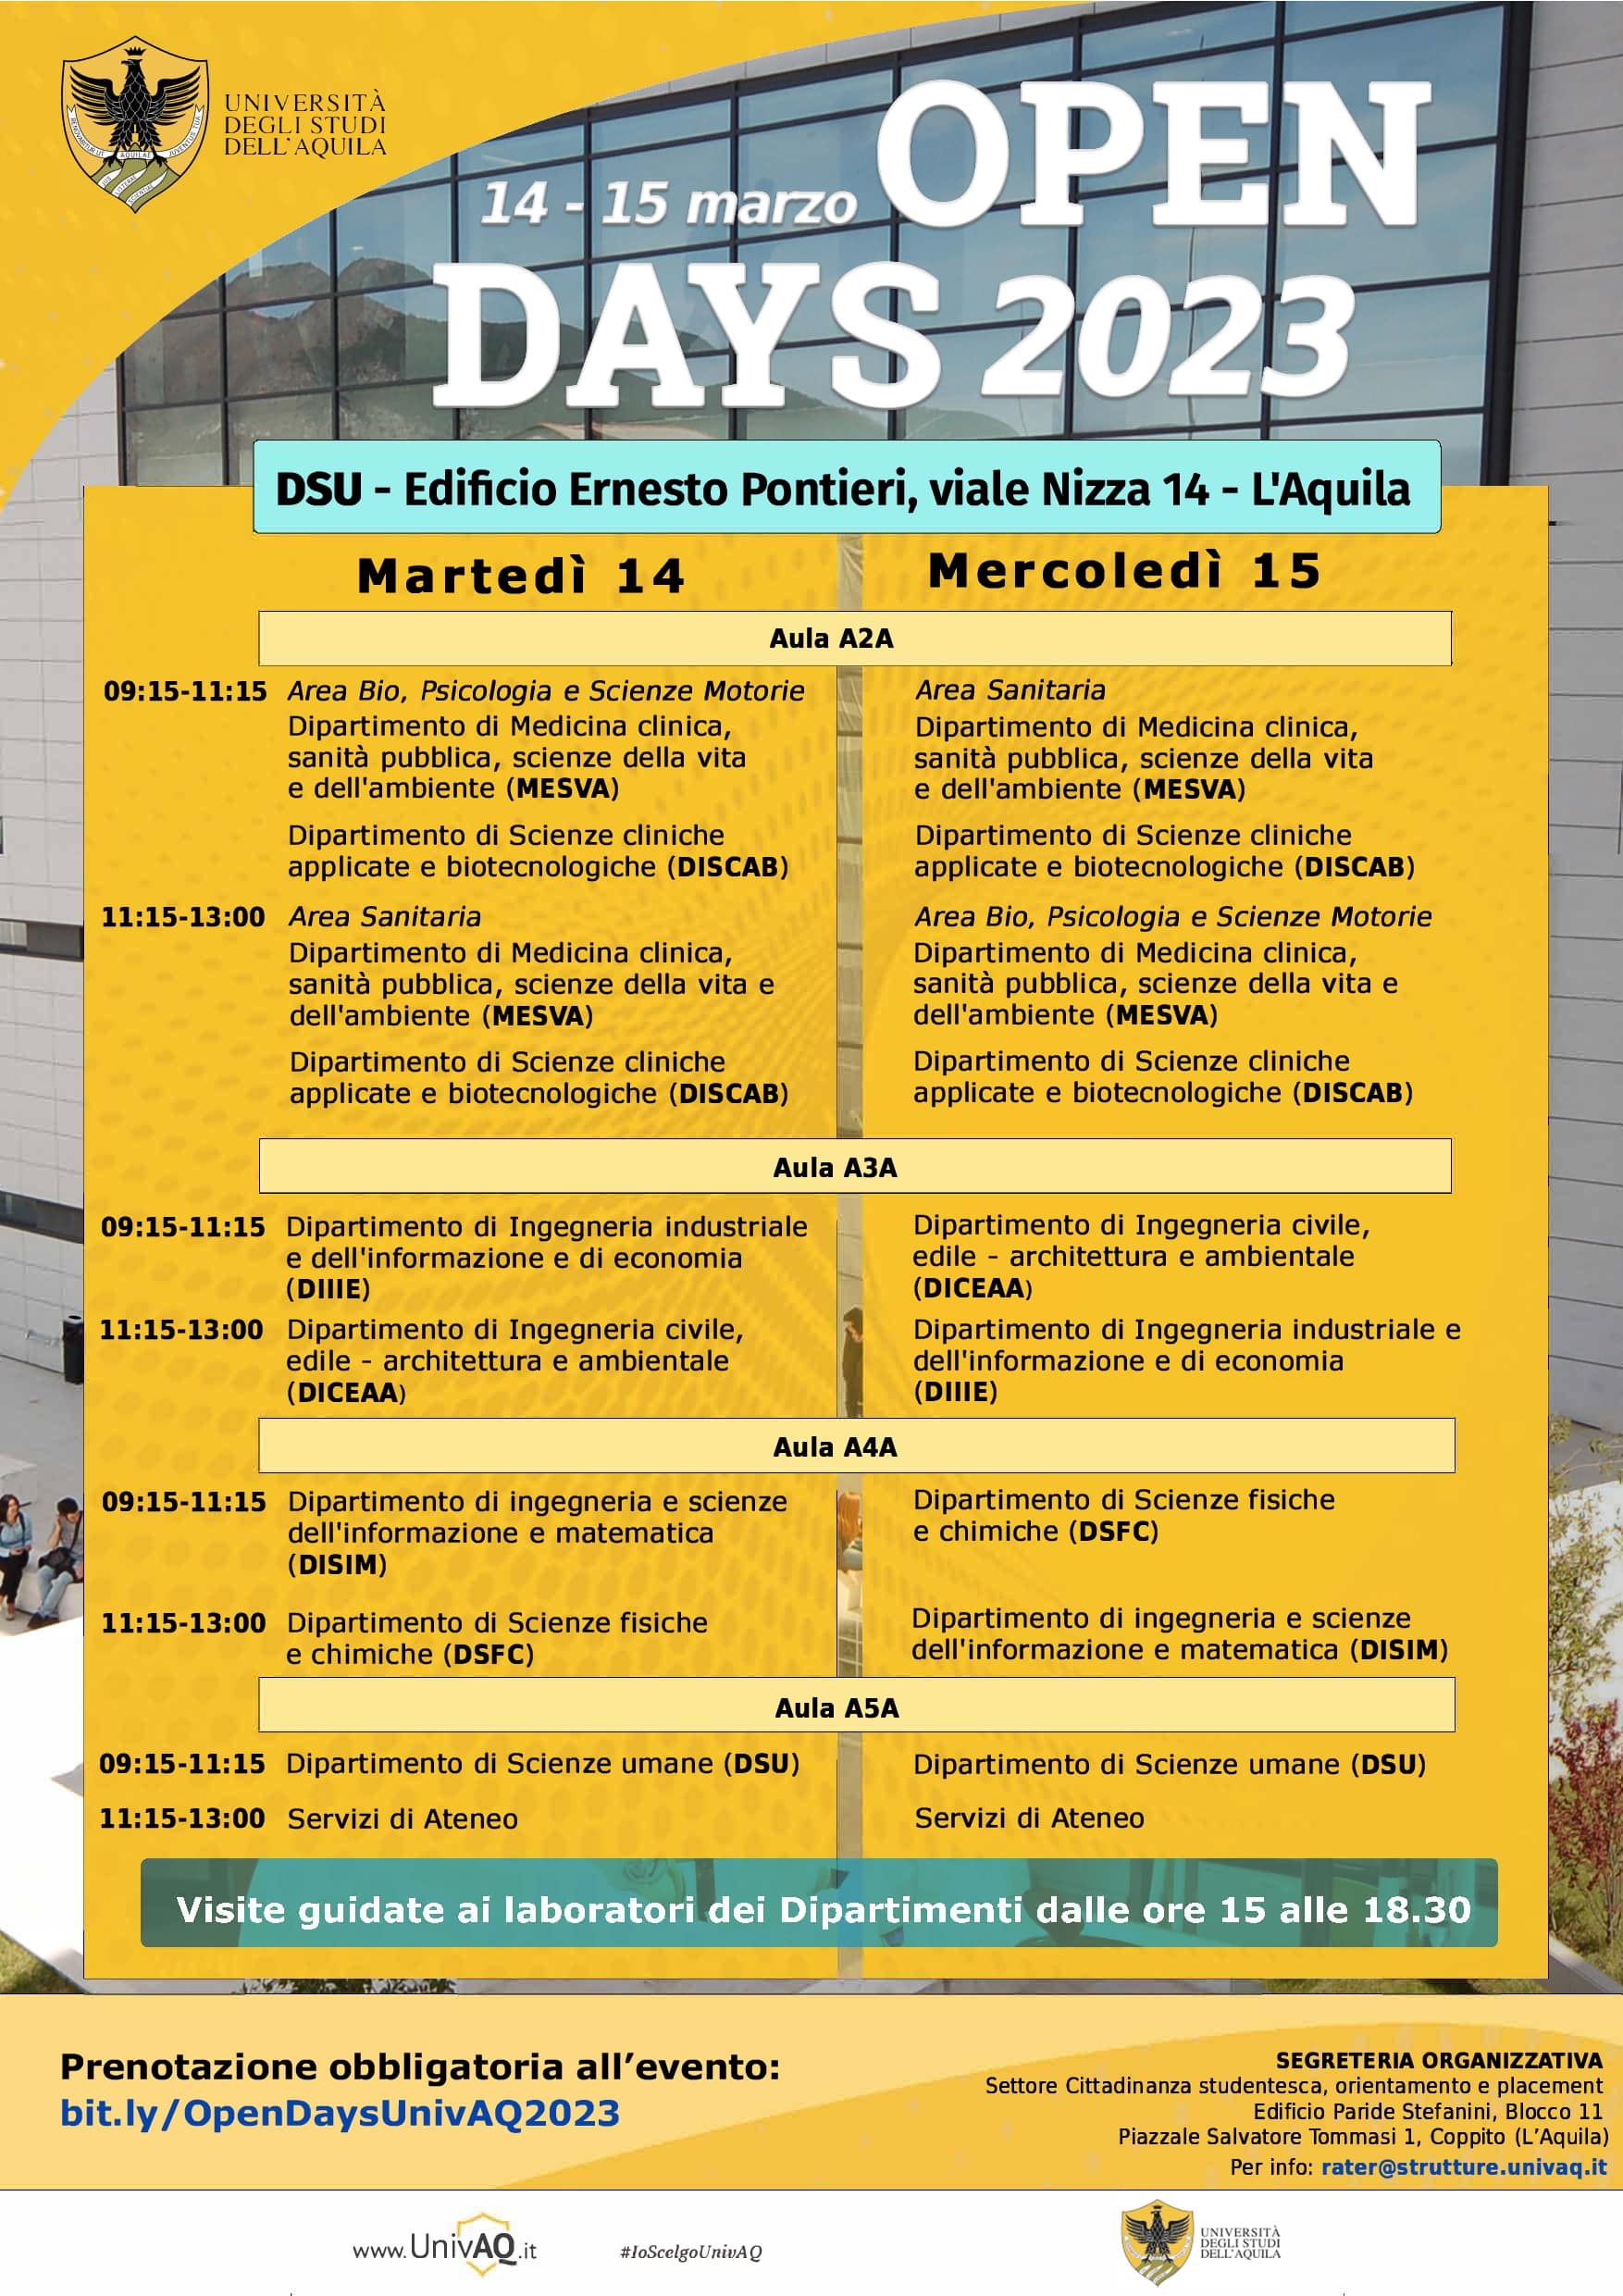 Open Days 2023 Universita dell'Aquila